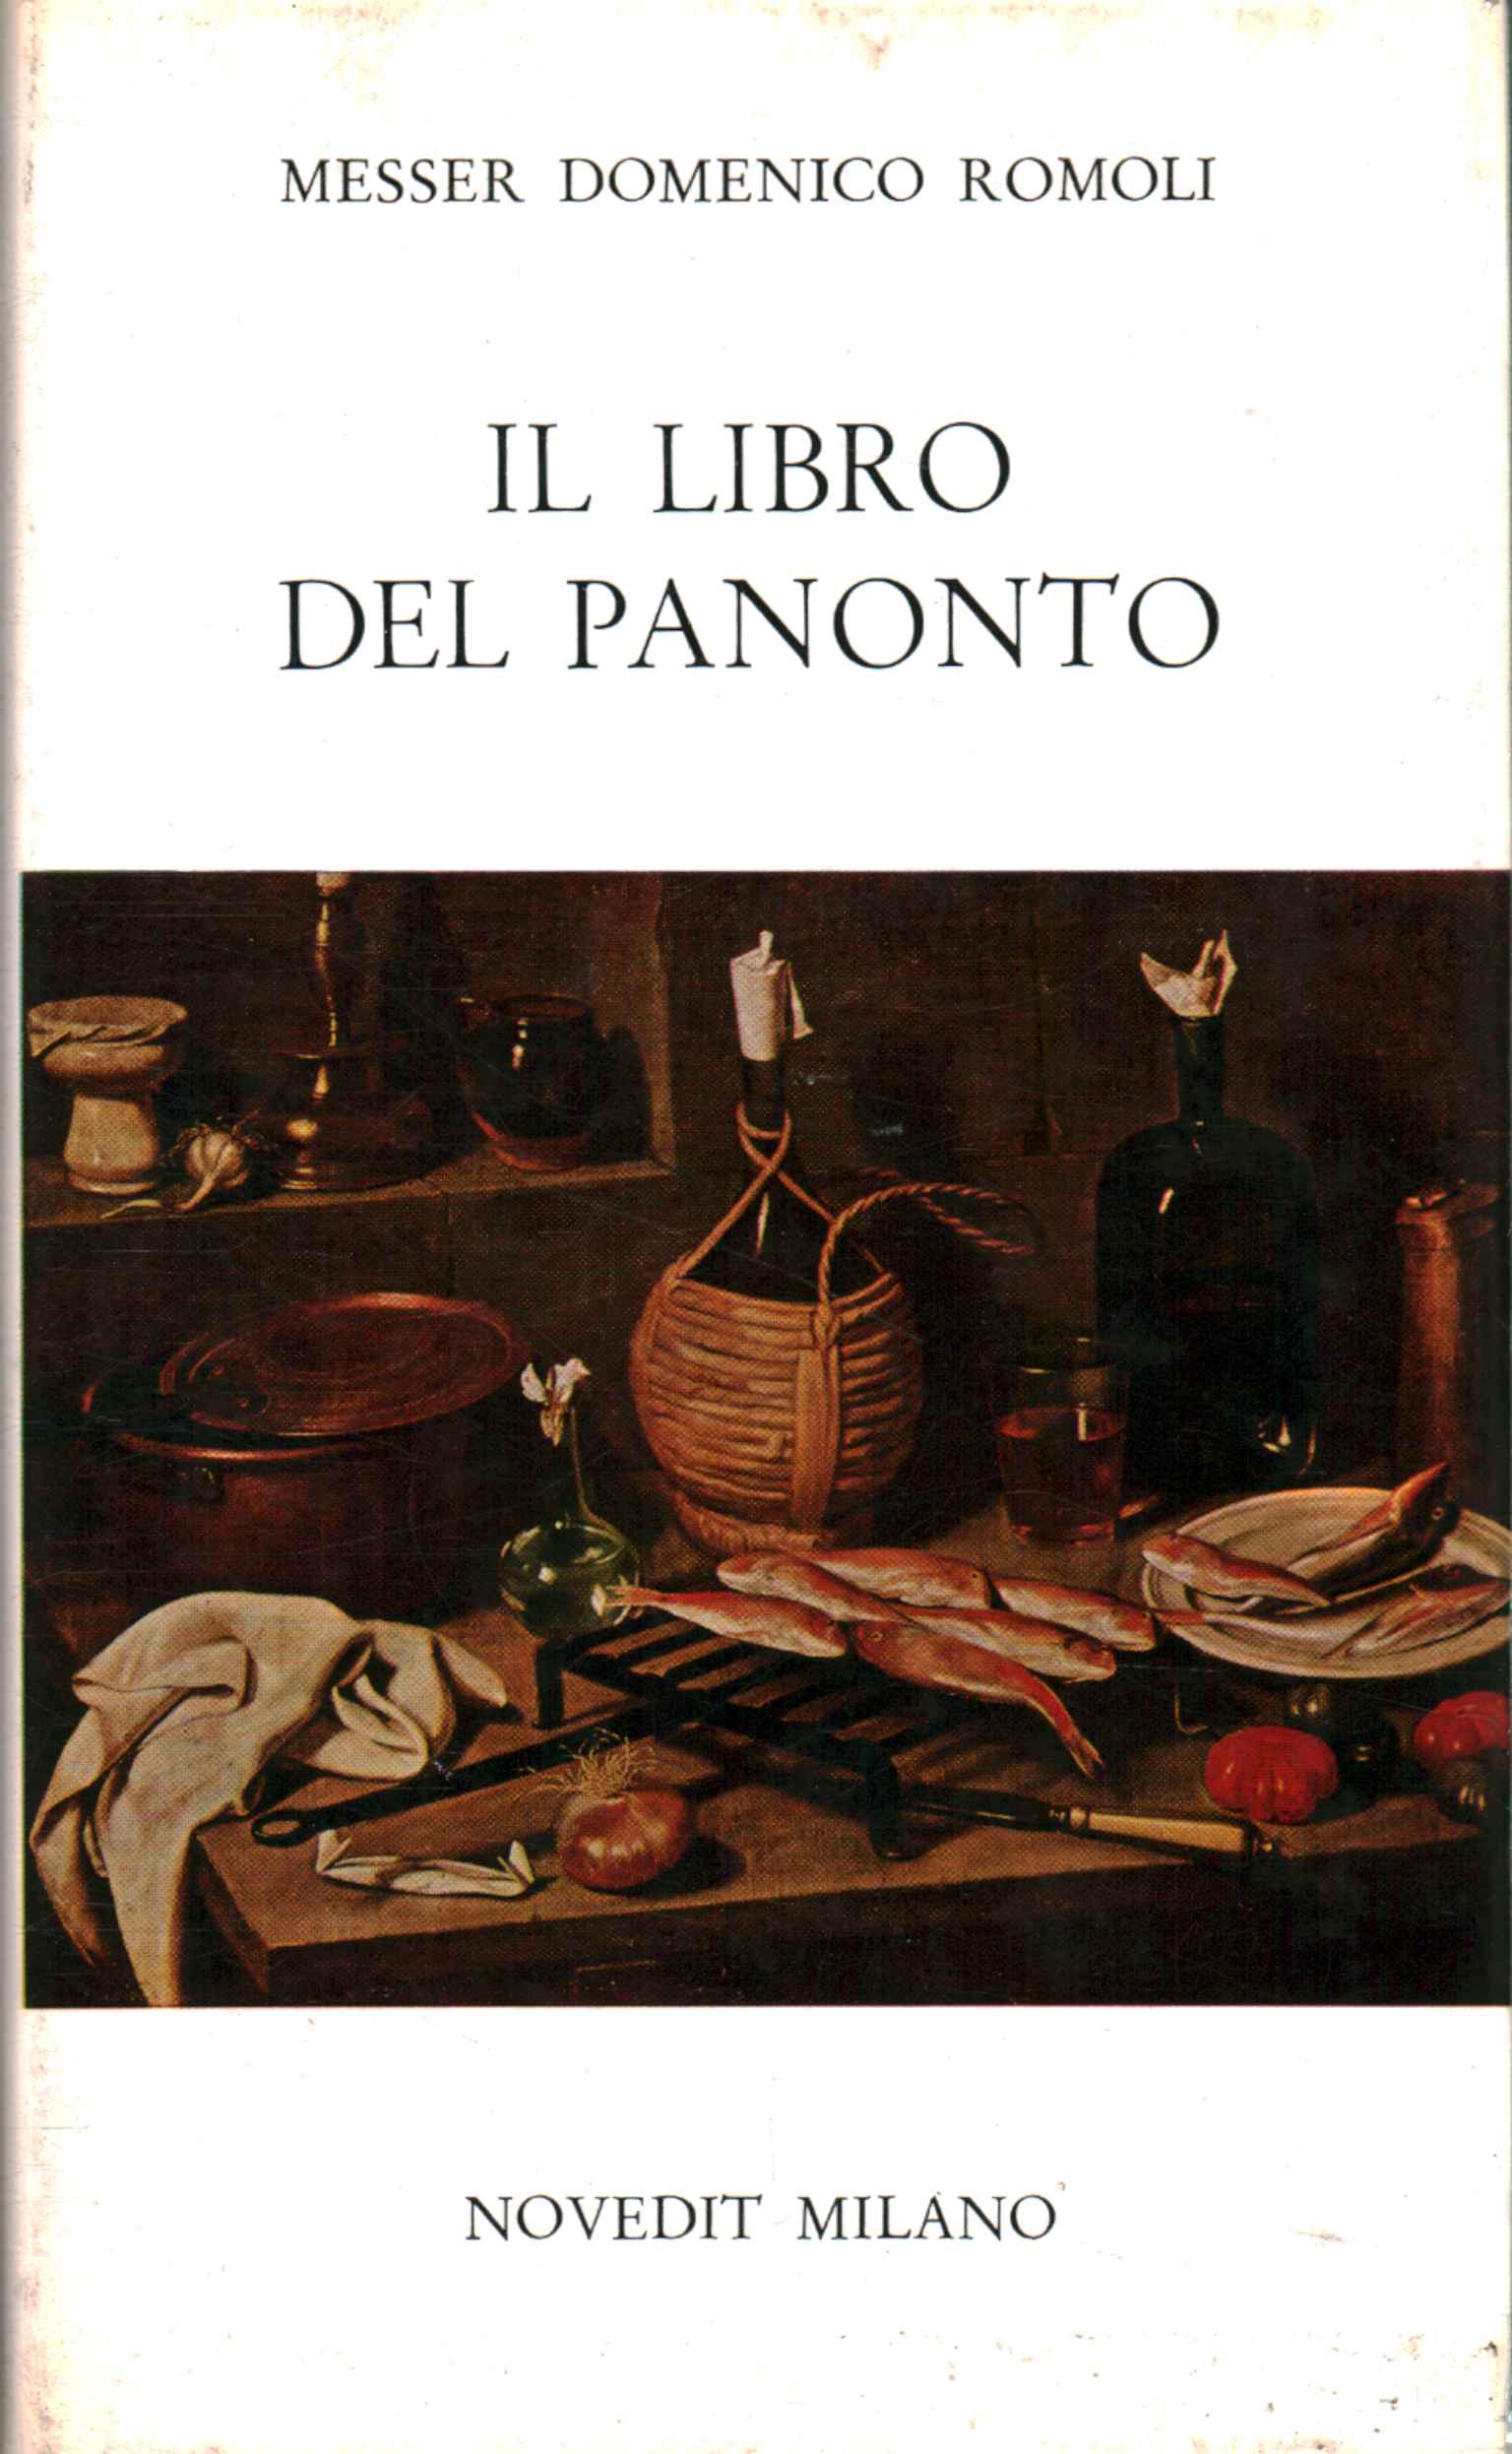 Das Panonto-Buch